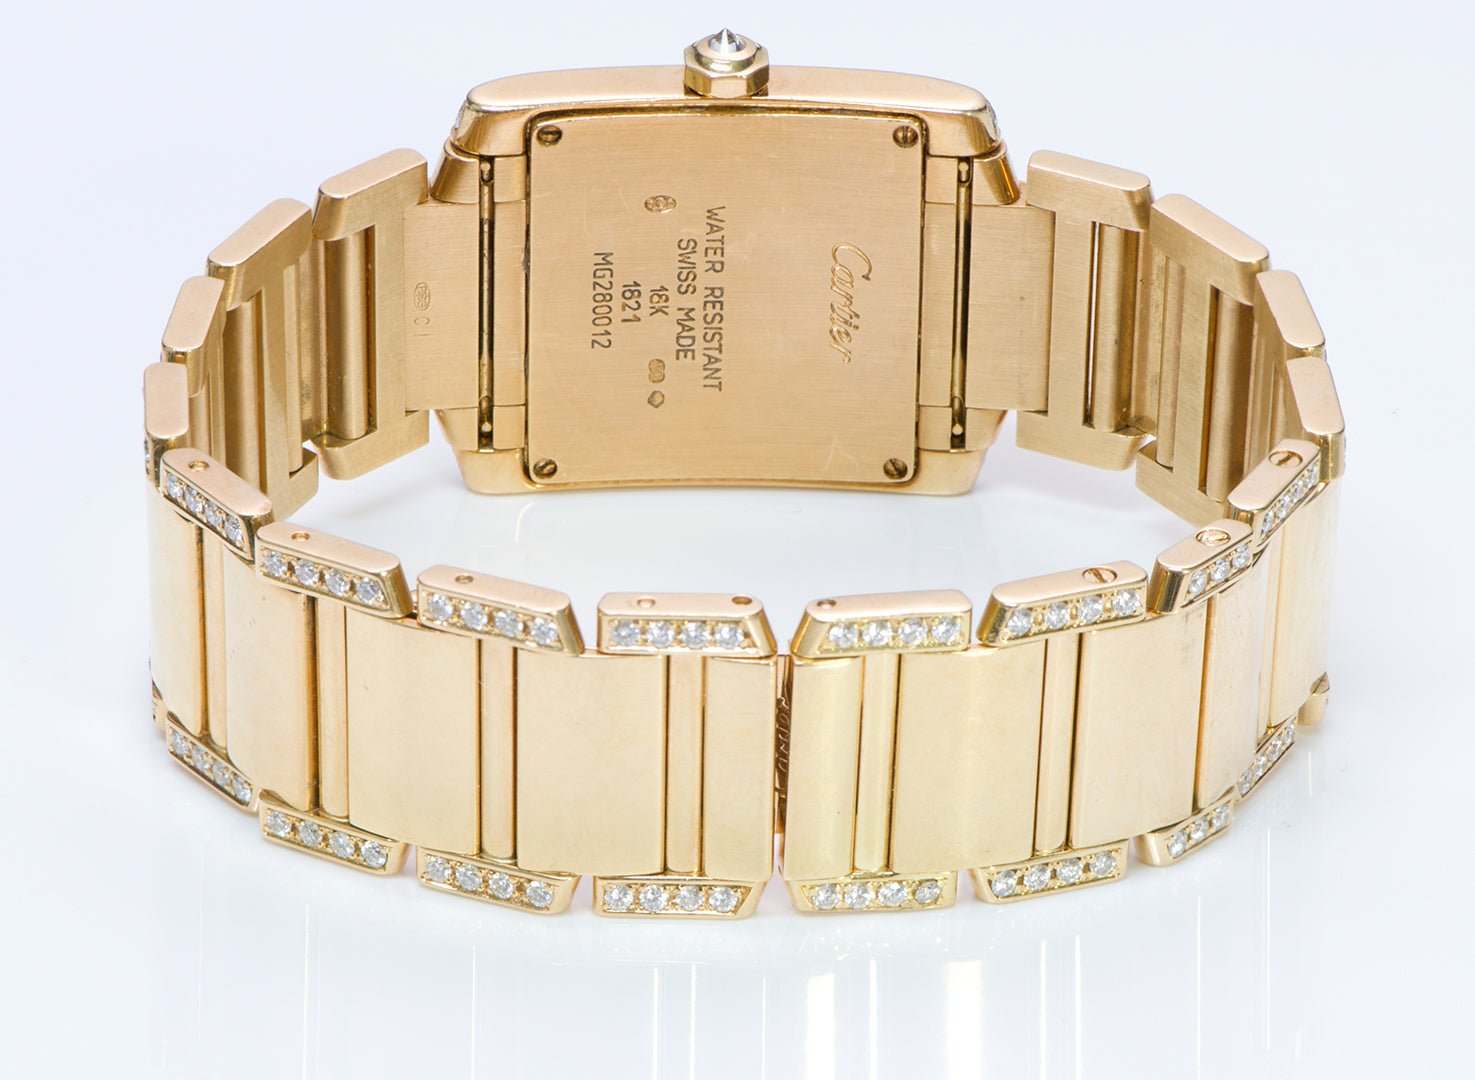 Cartier Tank Française Gold & Diamond Watch 1821